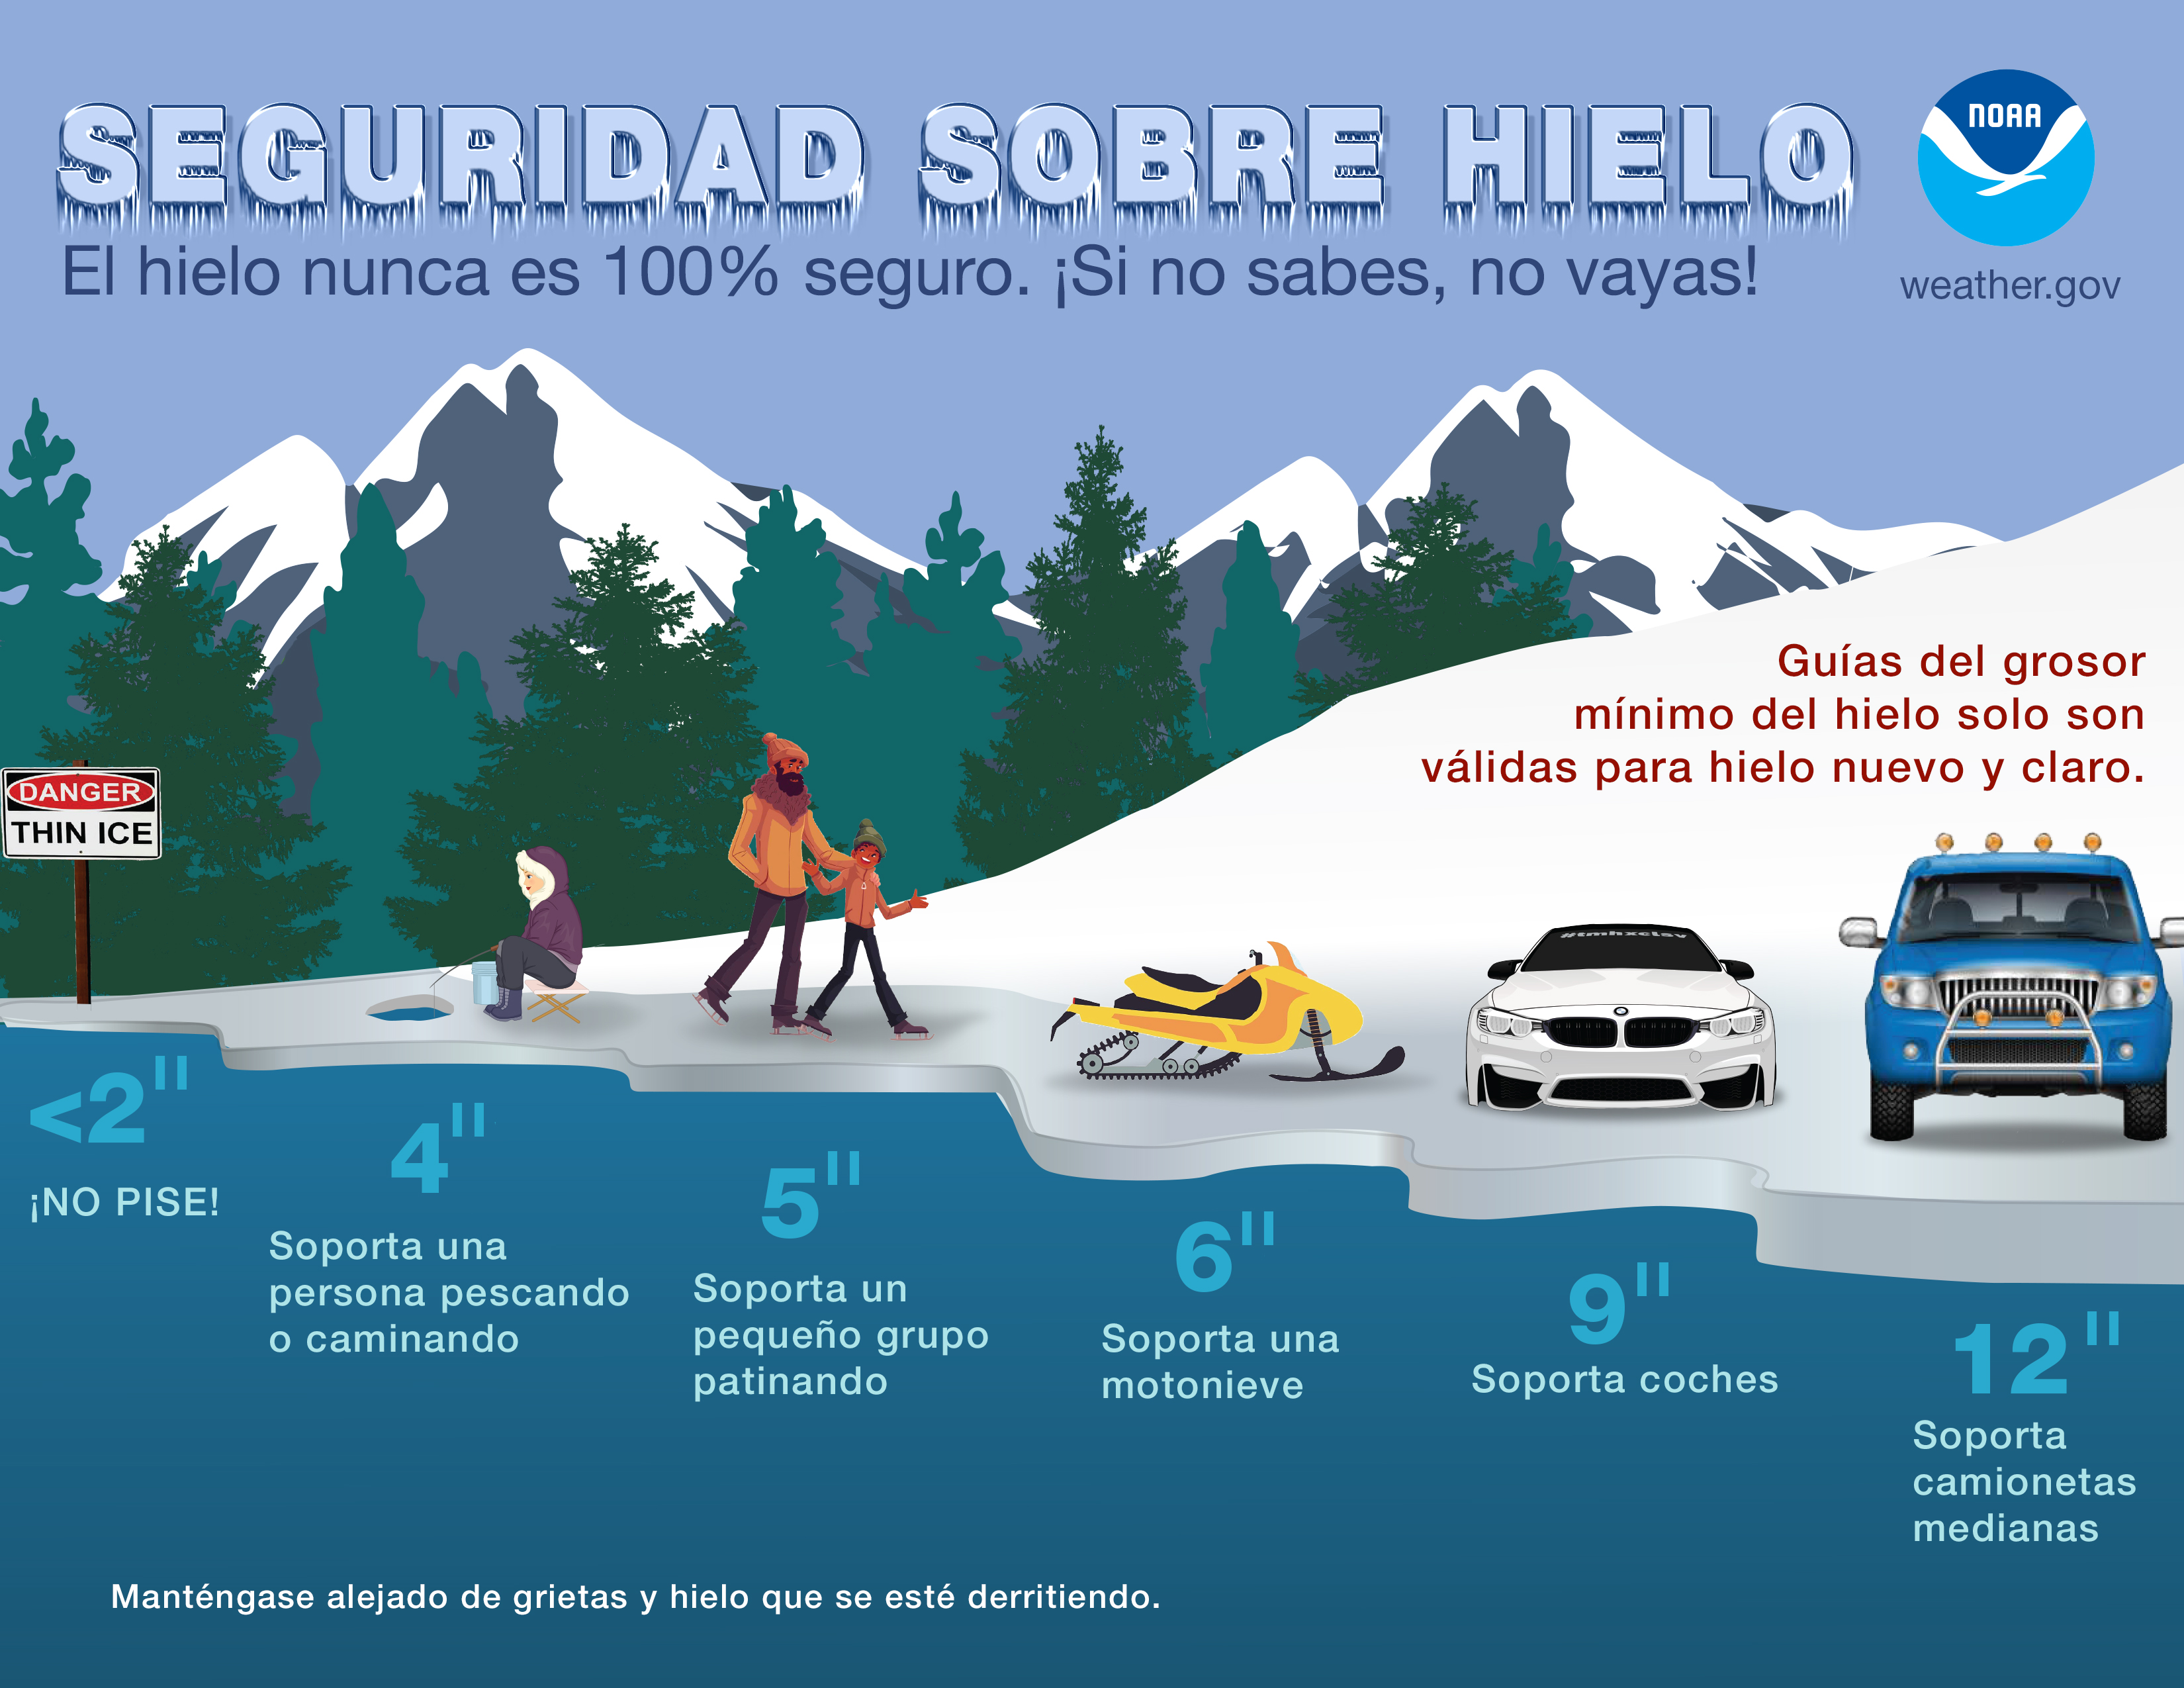 Safety on Ice (Spanish version)